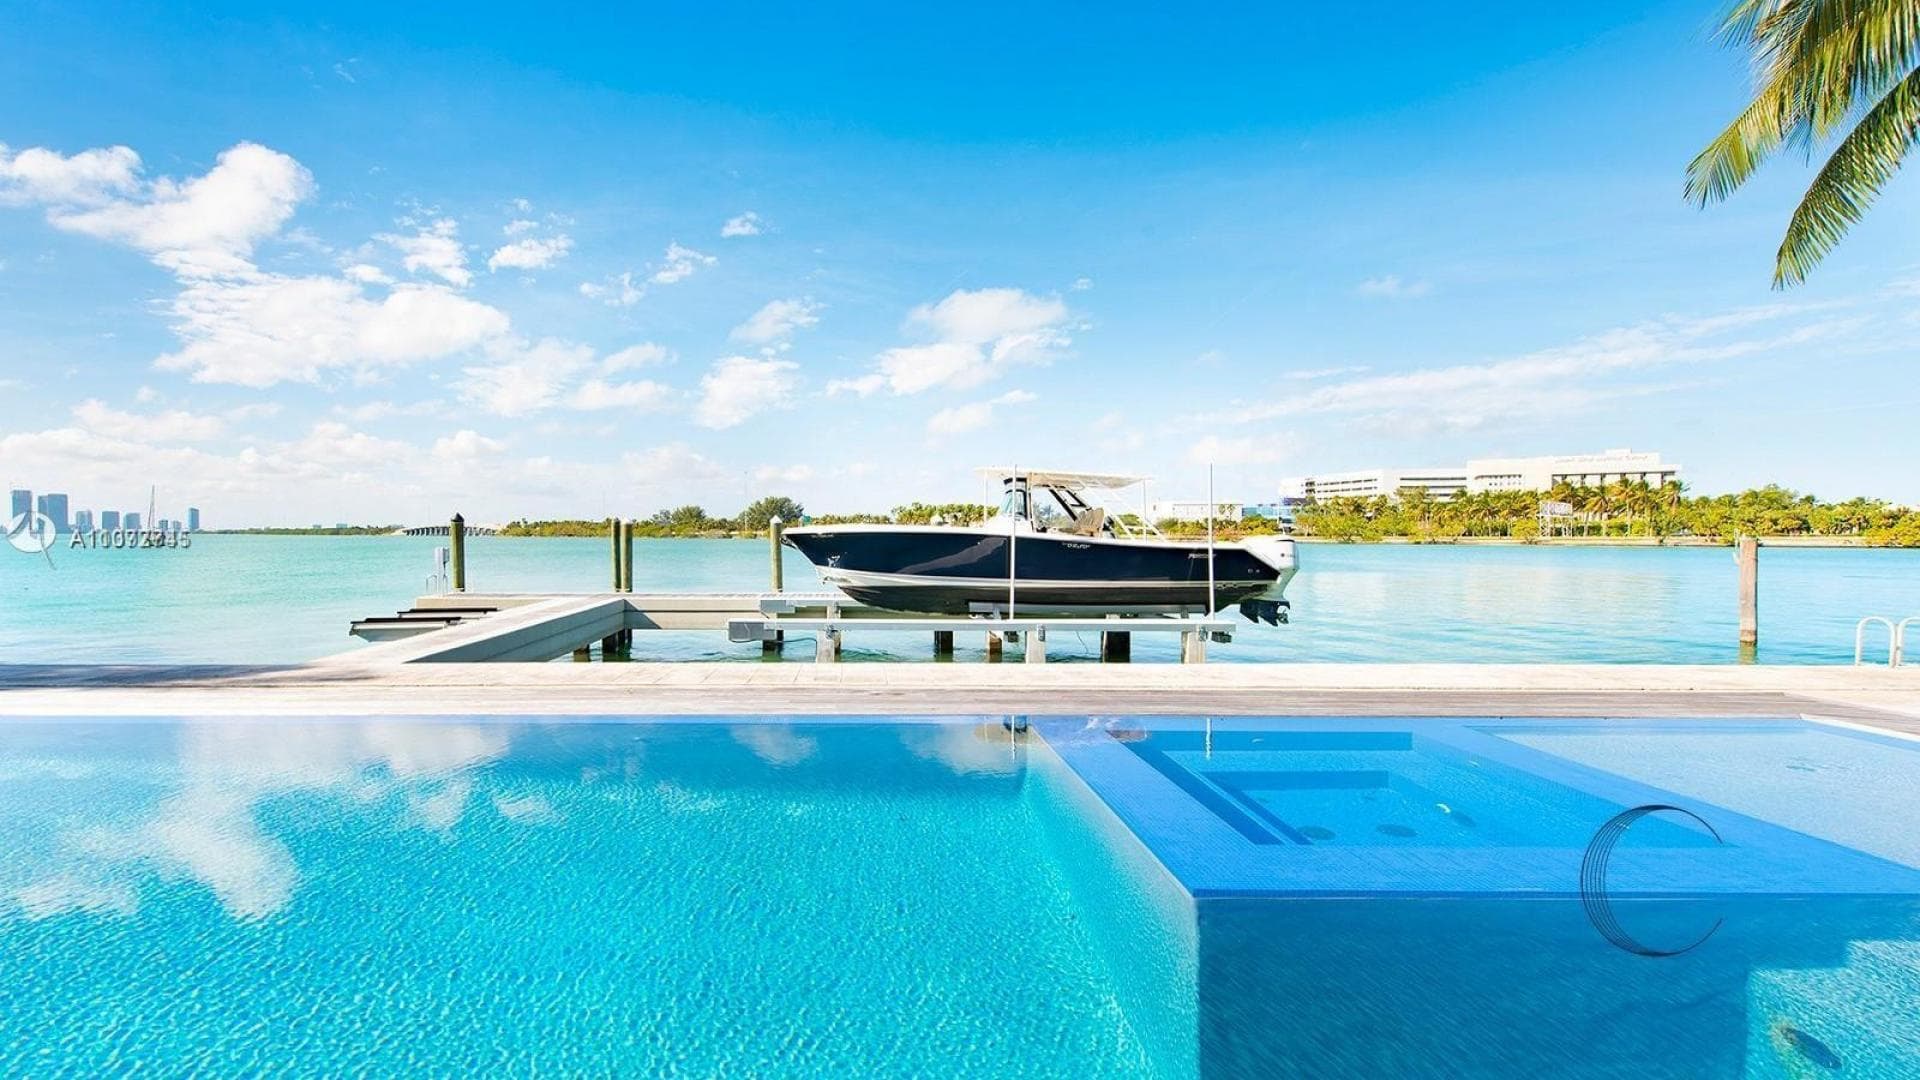 6 Bedroom Villa For Sale Miami Beach Lp09767 2892f9c229c03a00.jpg